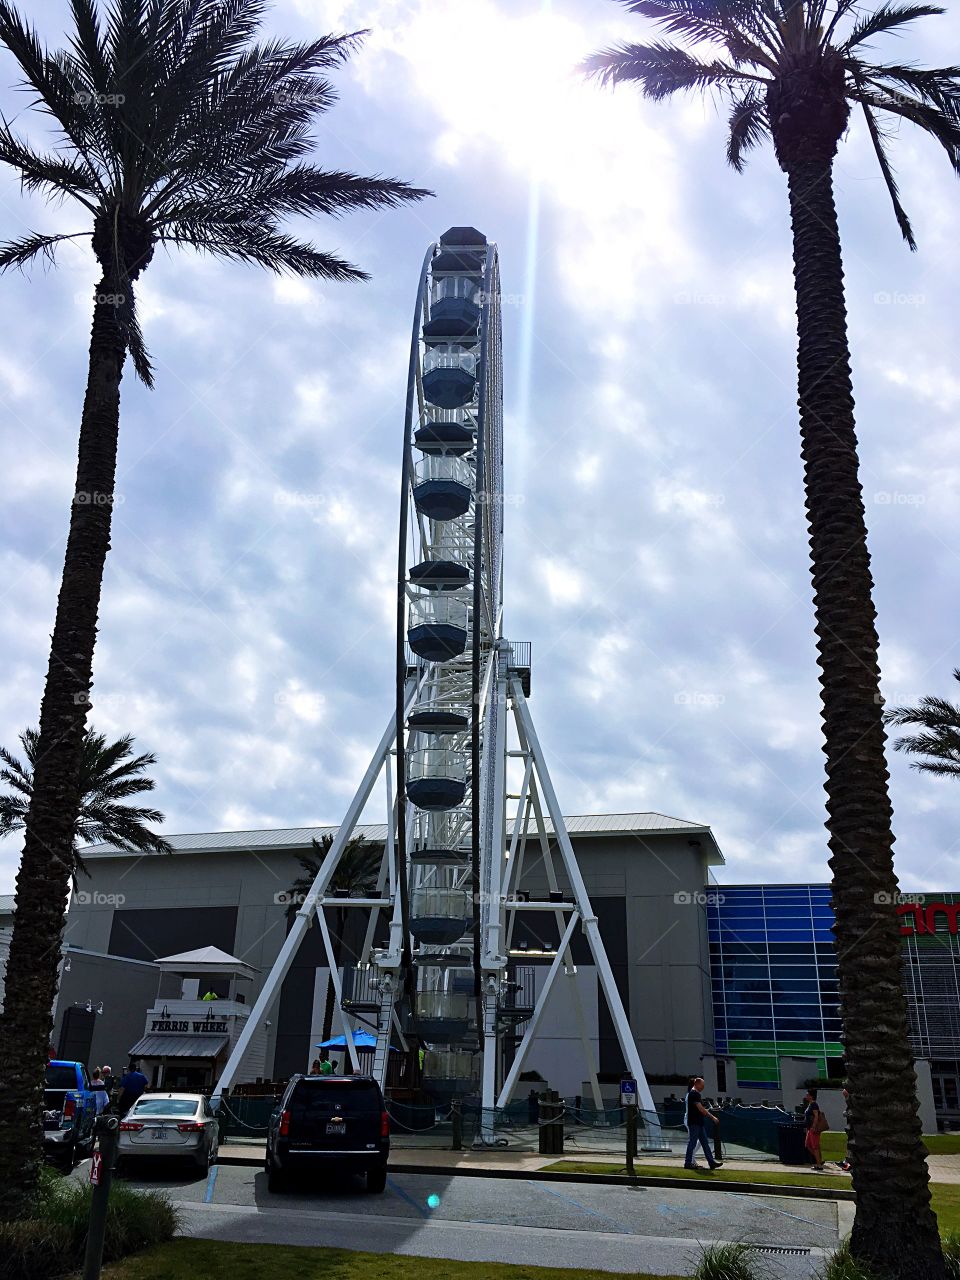 Ferris wheel at the wharf